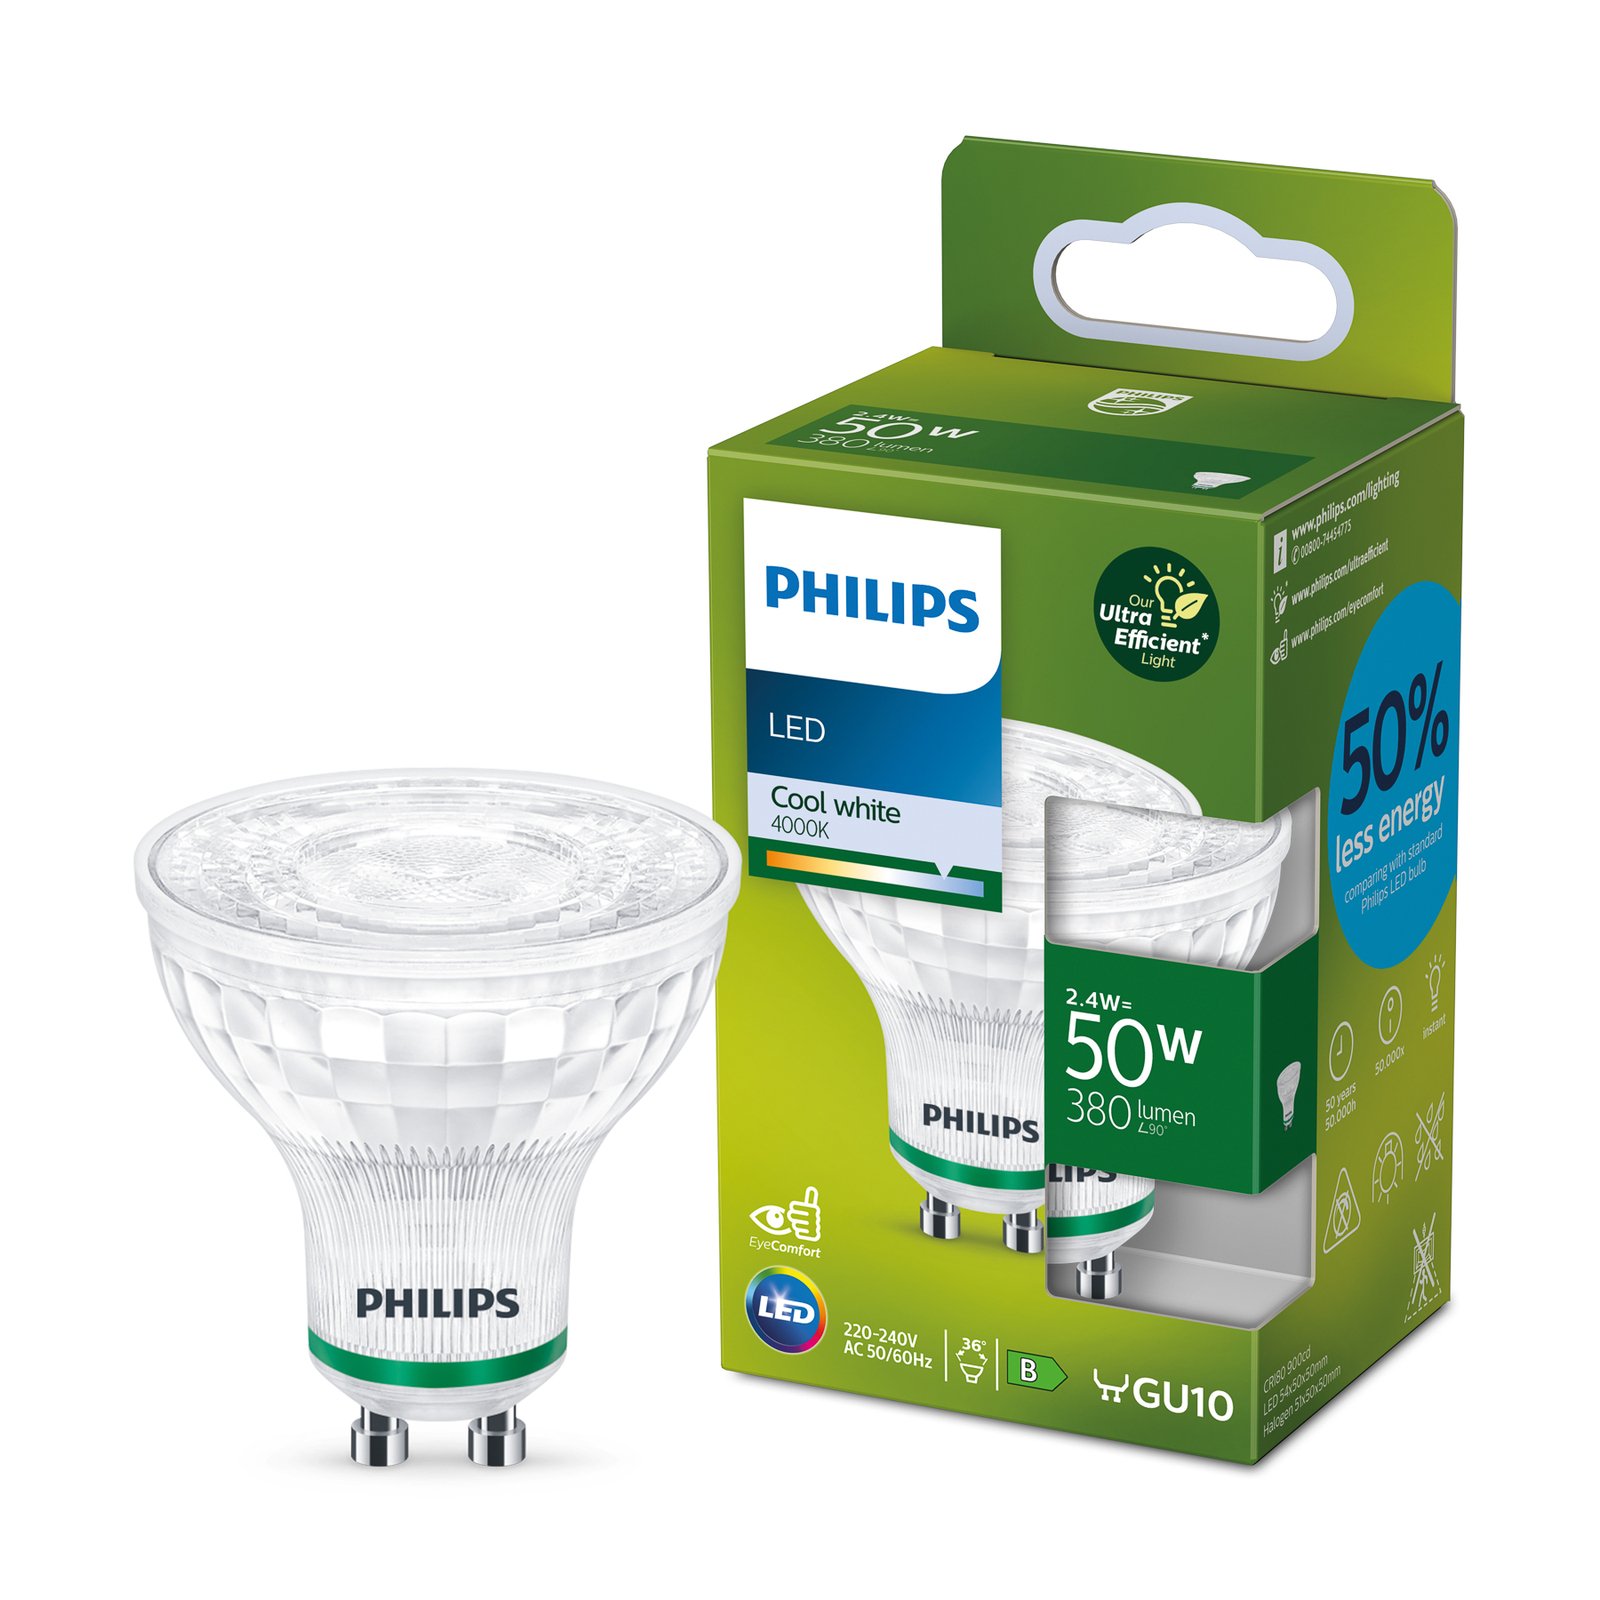 Philips LED reflektor GU10 2,4W 380lm 36° 4000K